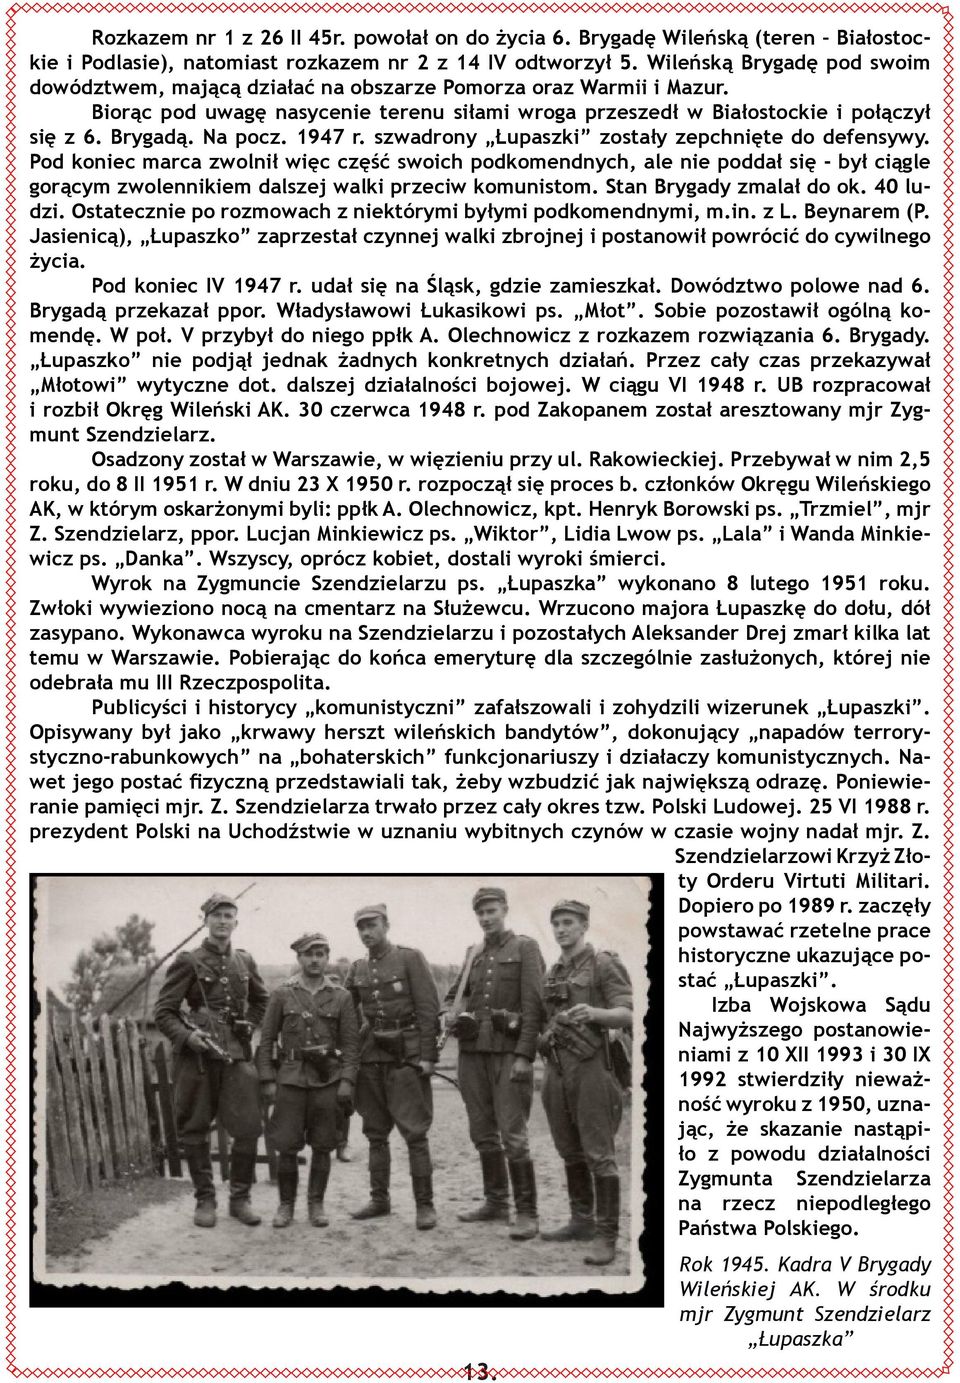 Na pocz. 1947 r. szwadrony Łupaszki zostały zepchnięte do defensywy.